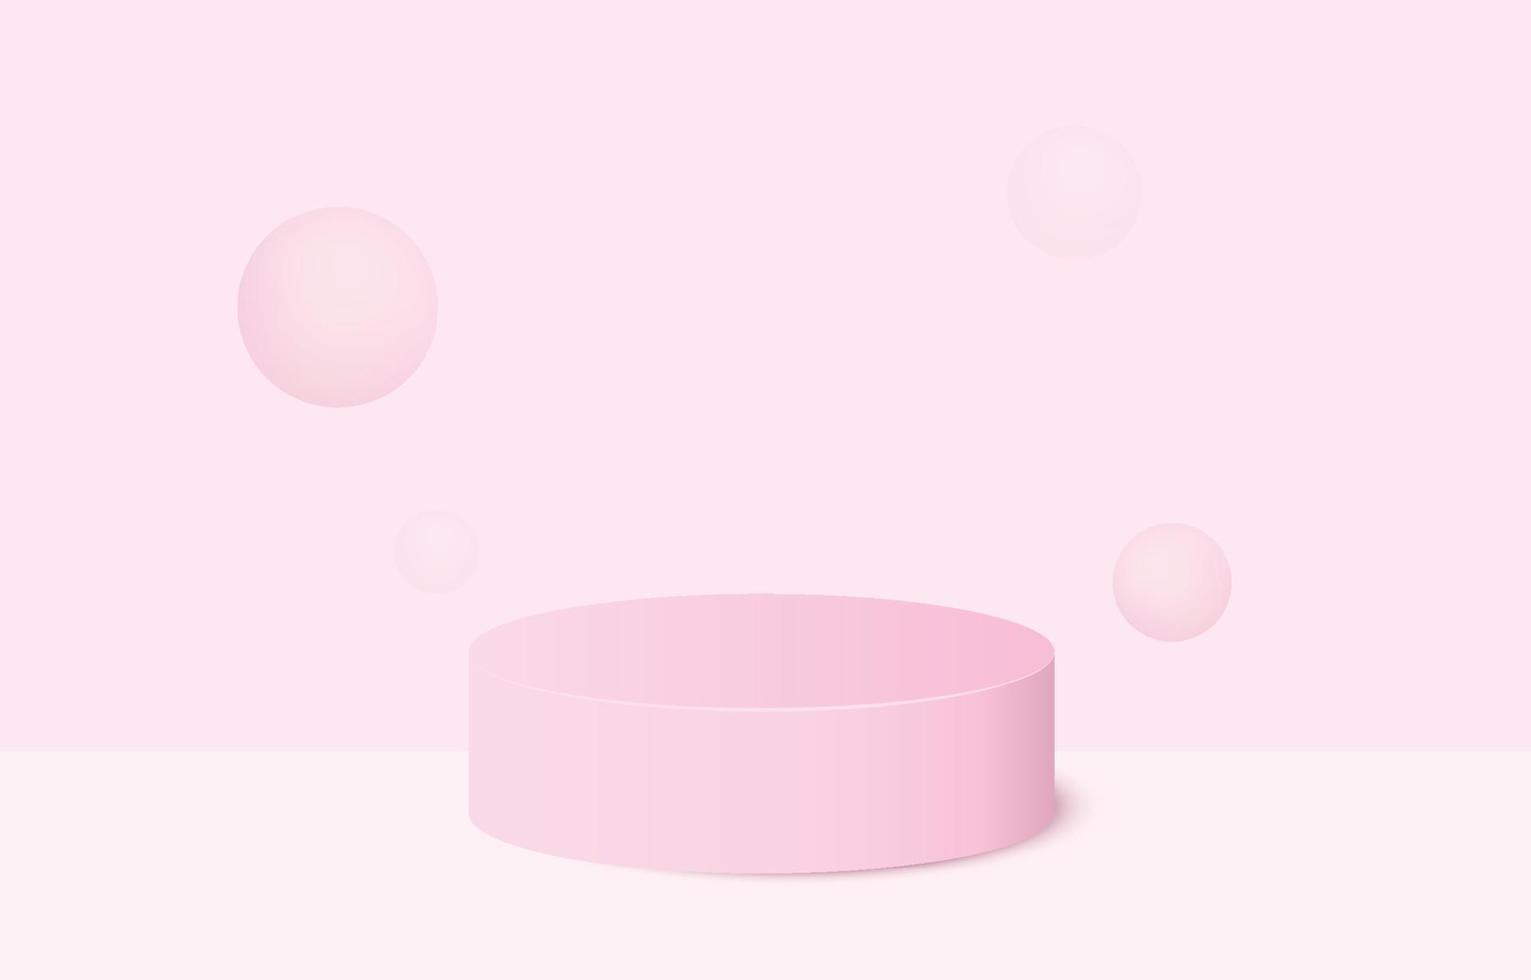 pódio de pedestal de cilindro 3d realista rosa com pano de fundo pastel. plataforma geométrica de renderização de vetor abstrato. apresentação de exibição do produto. cena mínima.